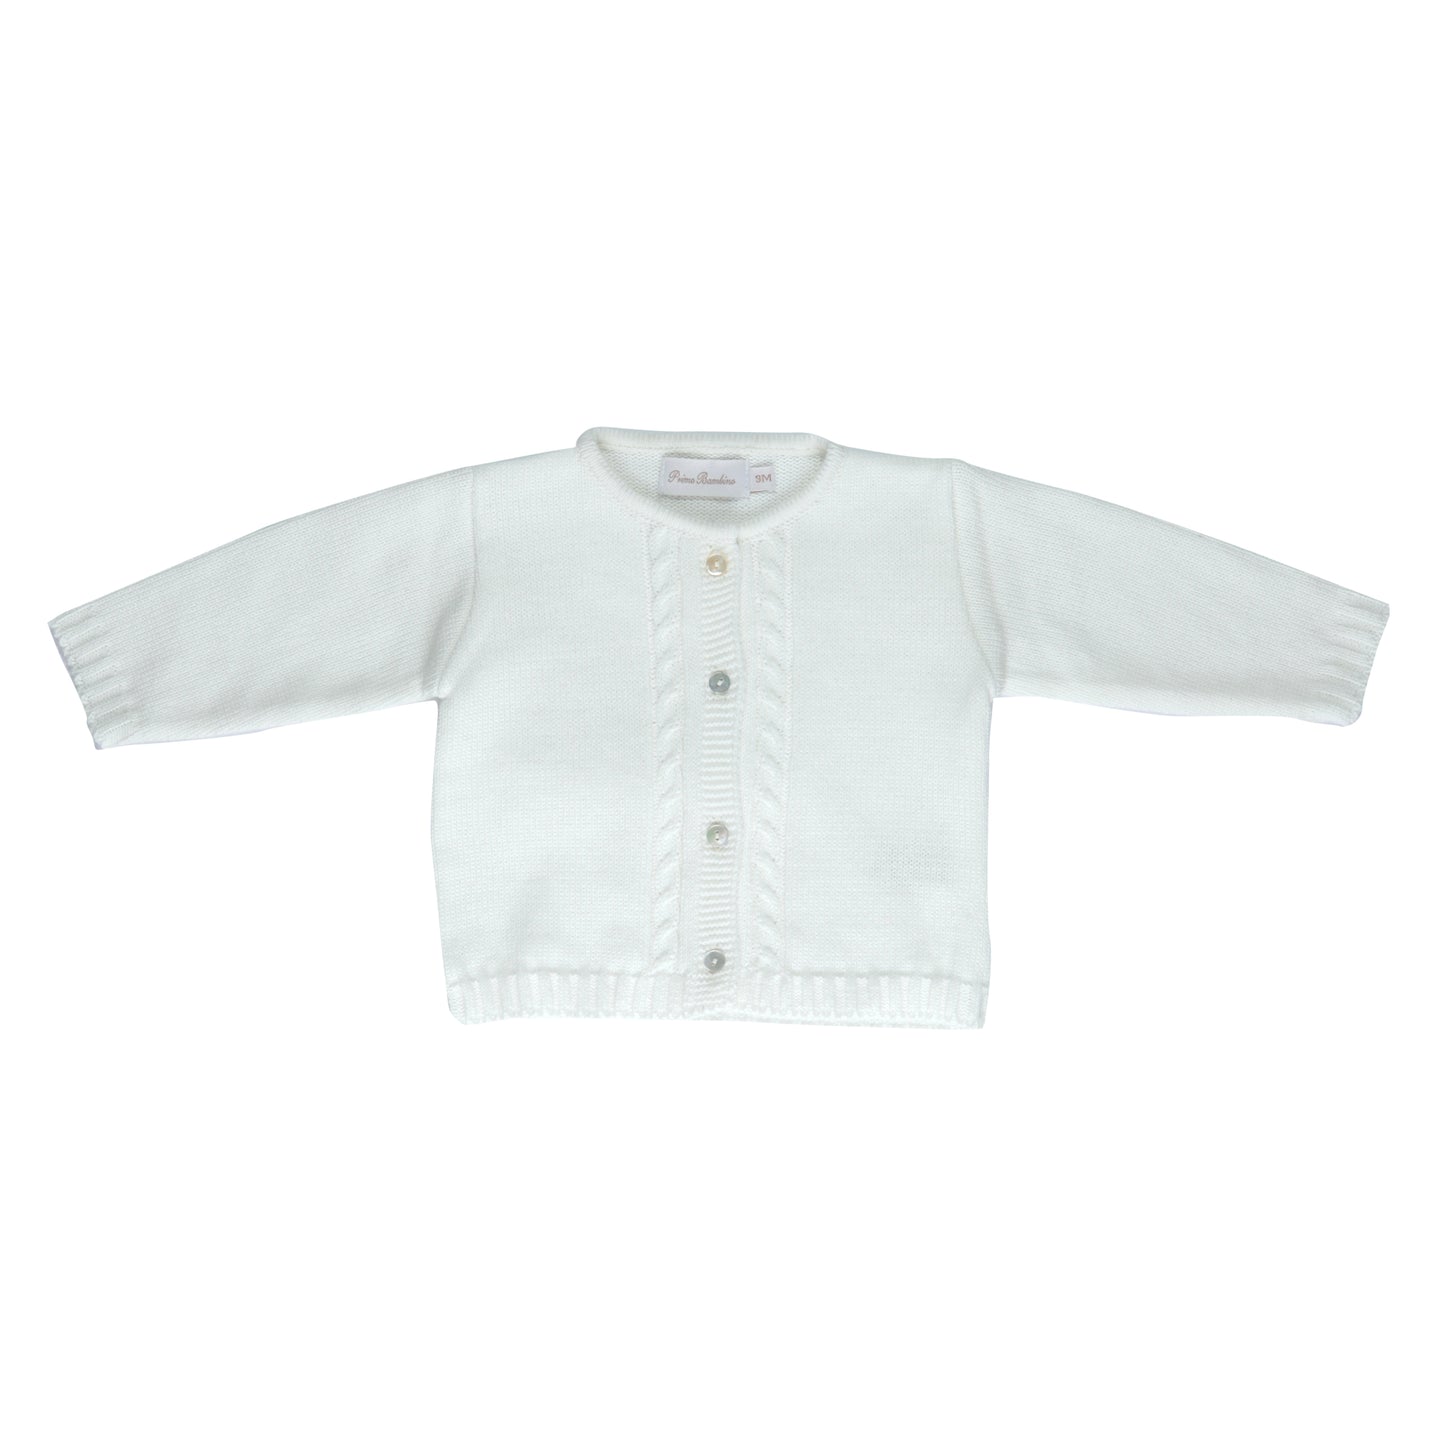 Cardigan bebê masculino tricot Natural - 10932 (11155)